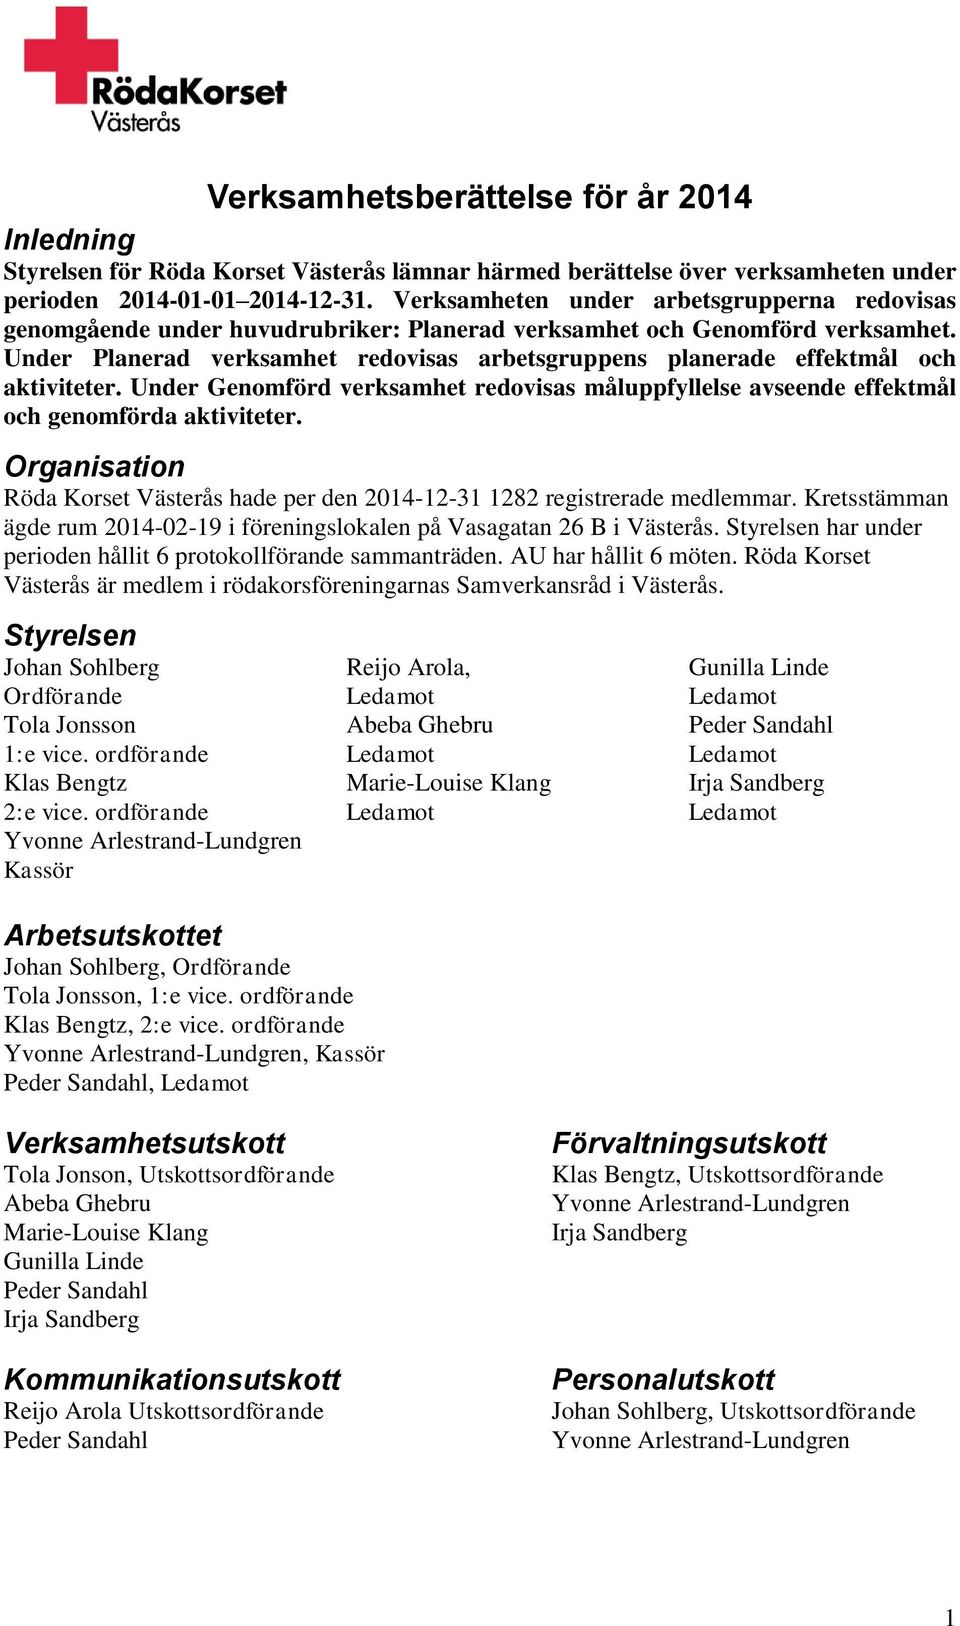 Under redovisas måluppfyllelse avseende effektmål och genomförda aktiviteter. Organisation Röda Korset Västerås hade per den 2014-12-31 1282 registrerade medlemmar.